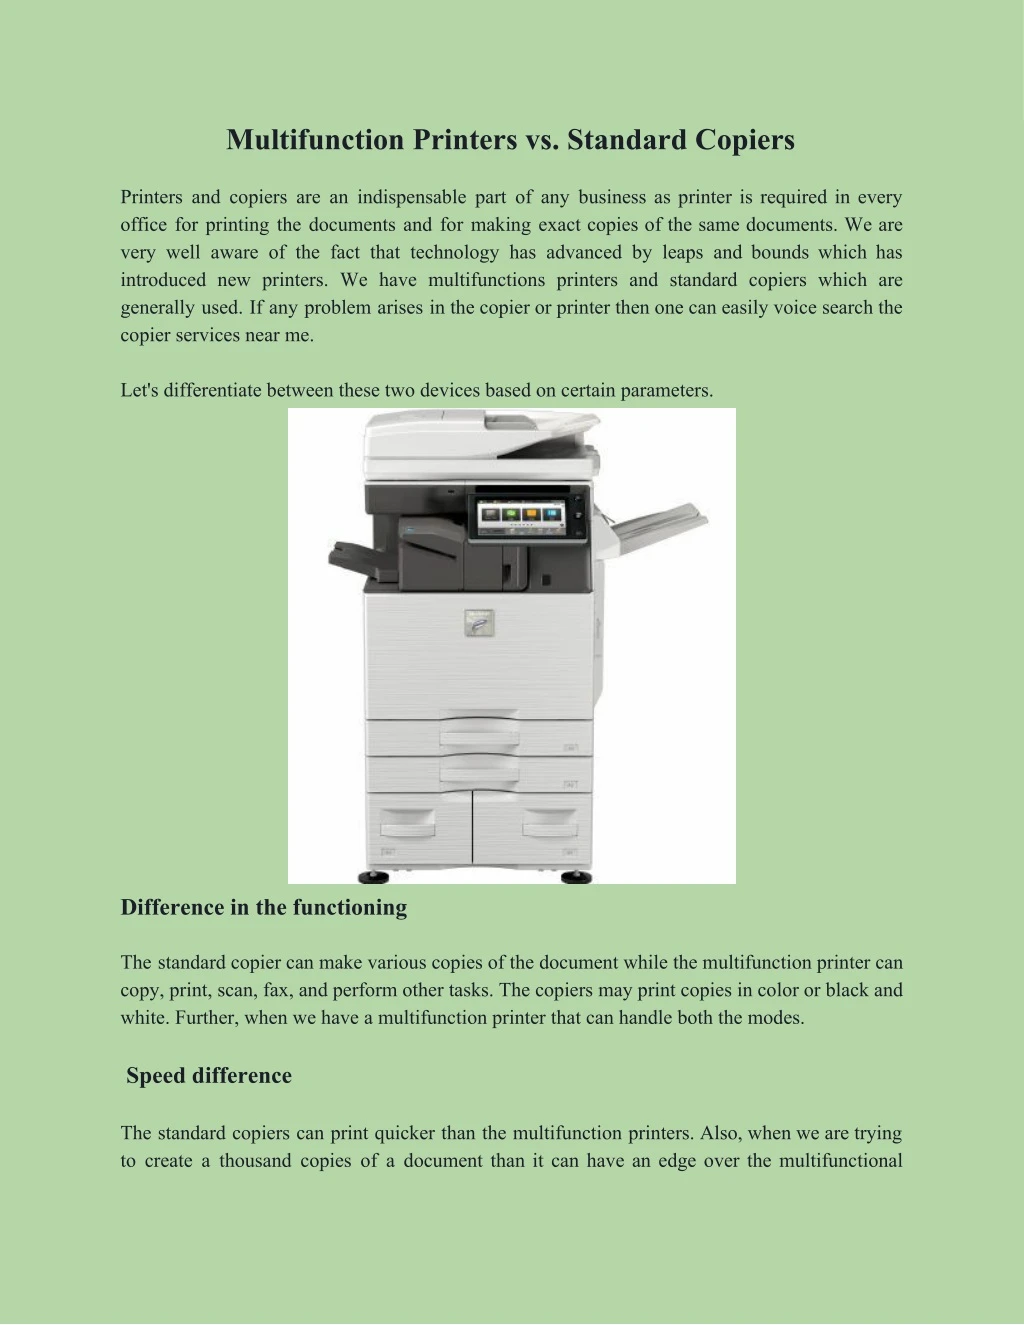 multifunction printers vs standard copiers